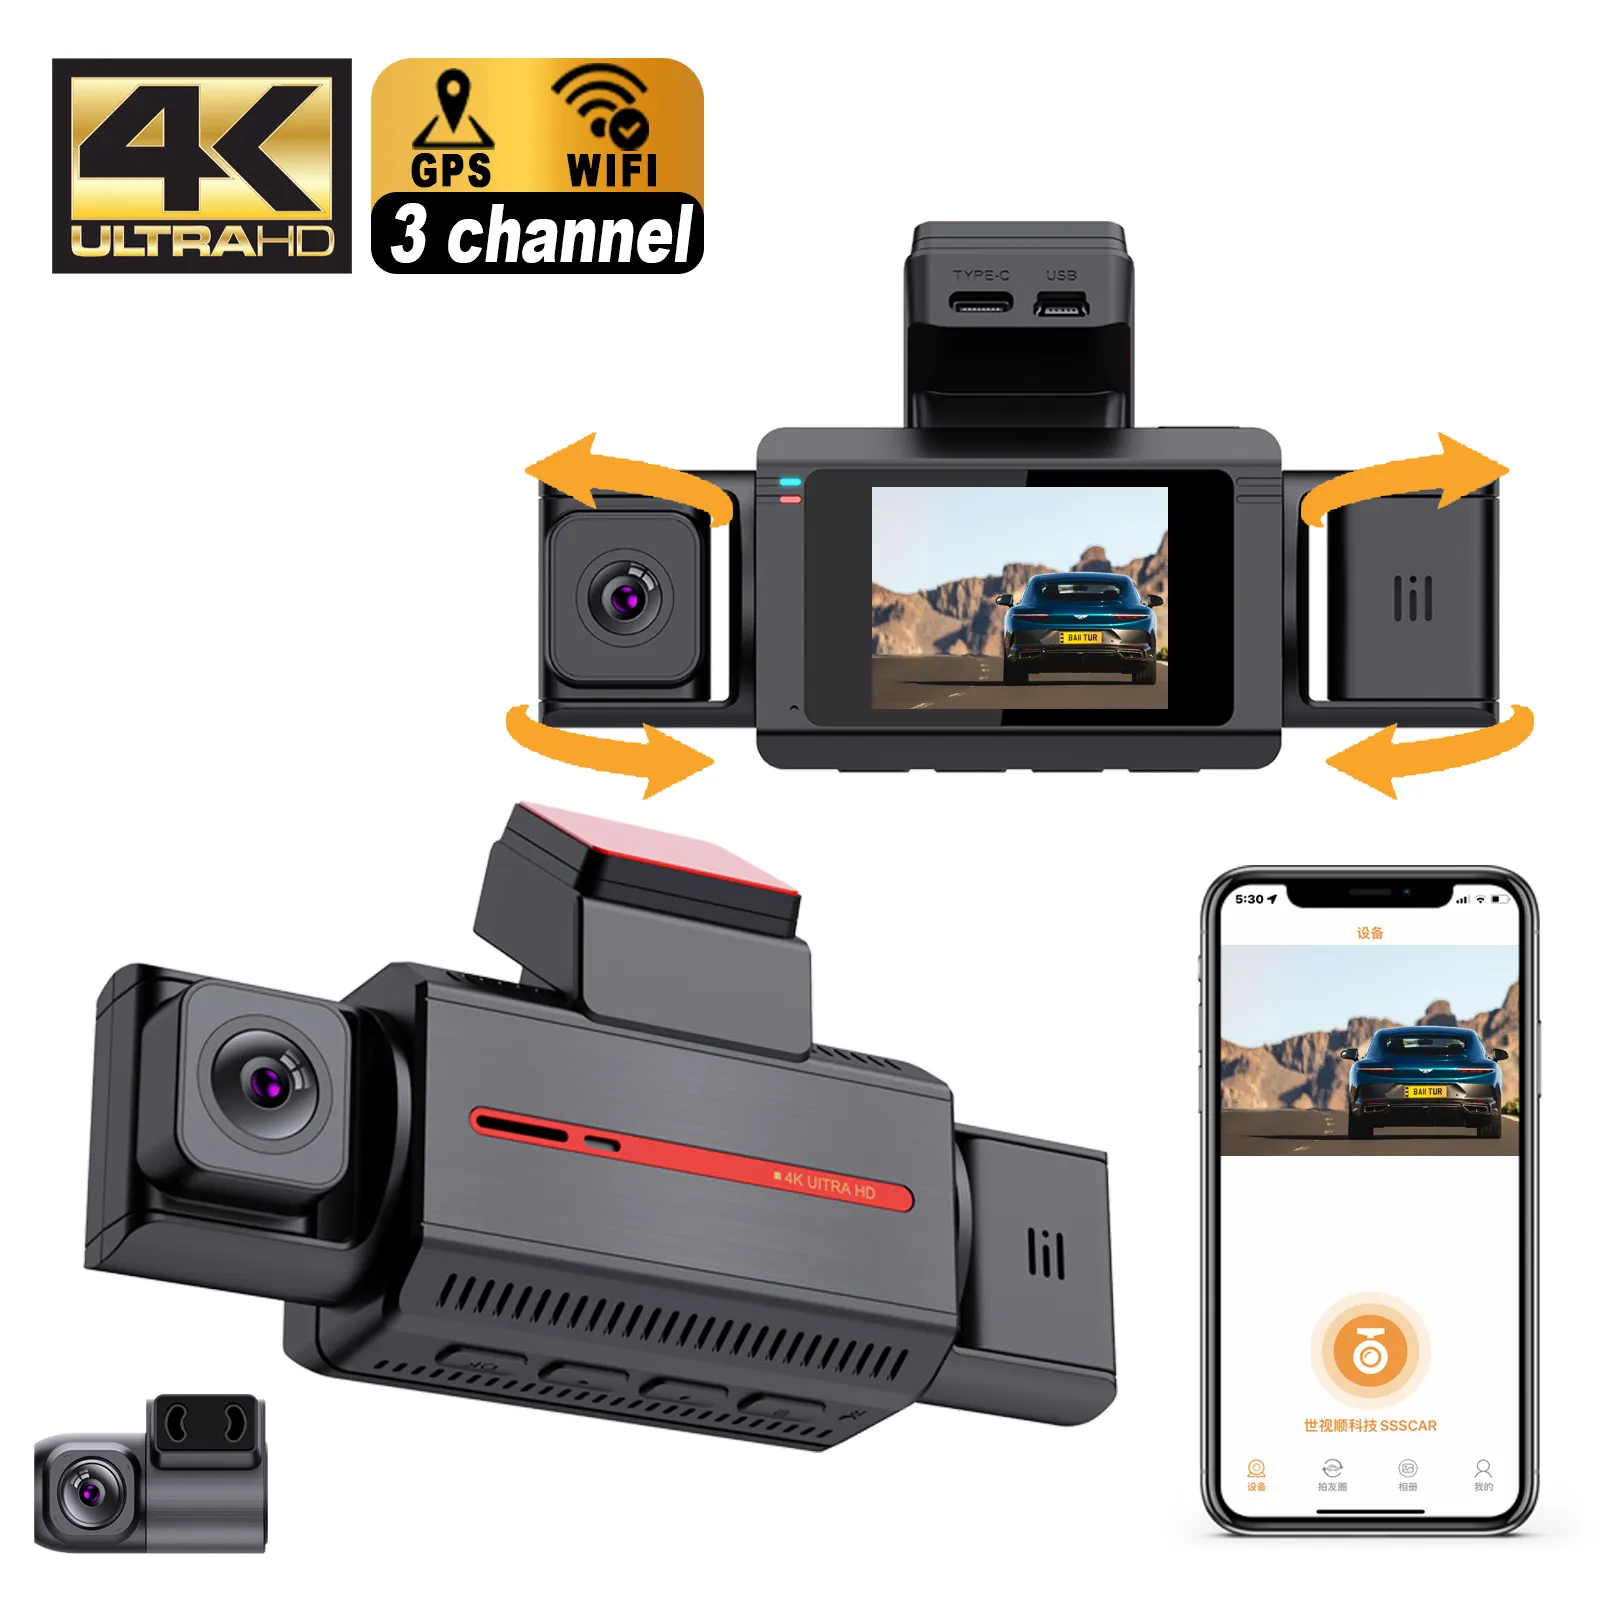 Dvr mini mobil baru wifi GPS 4k kotak hitam mobil 4k 3 lensa kamera dasbor depan dan belakang dalam 4k wifi kamera dasbor gps kamera dasbor 3 saluran 4k